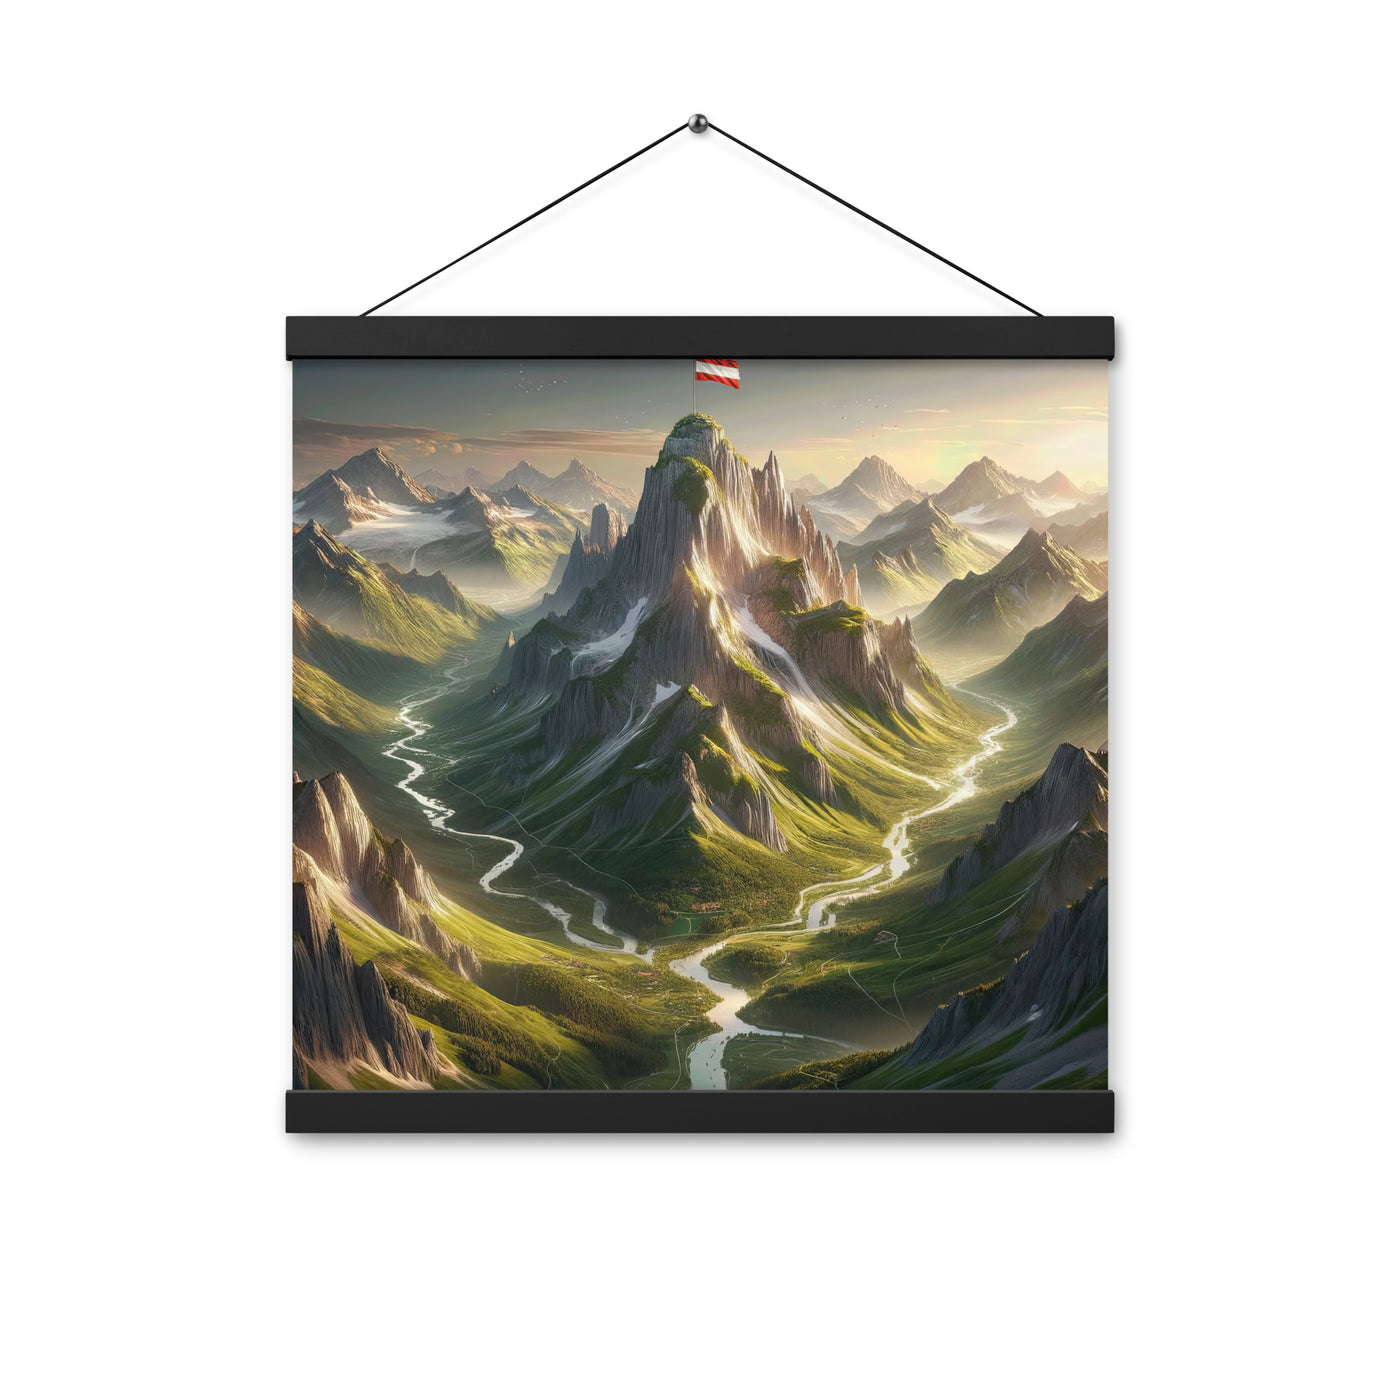 Fotorealistisches Bild der Alpen mit österreichischer Flagge, scharfen Gipfeln und grünen Tälern - Enhanced Matte Paper Poster With berge xxx yyy zzz 40.6 x 40.6 cm